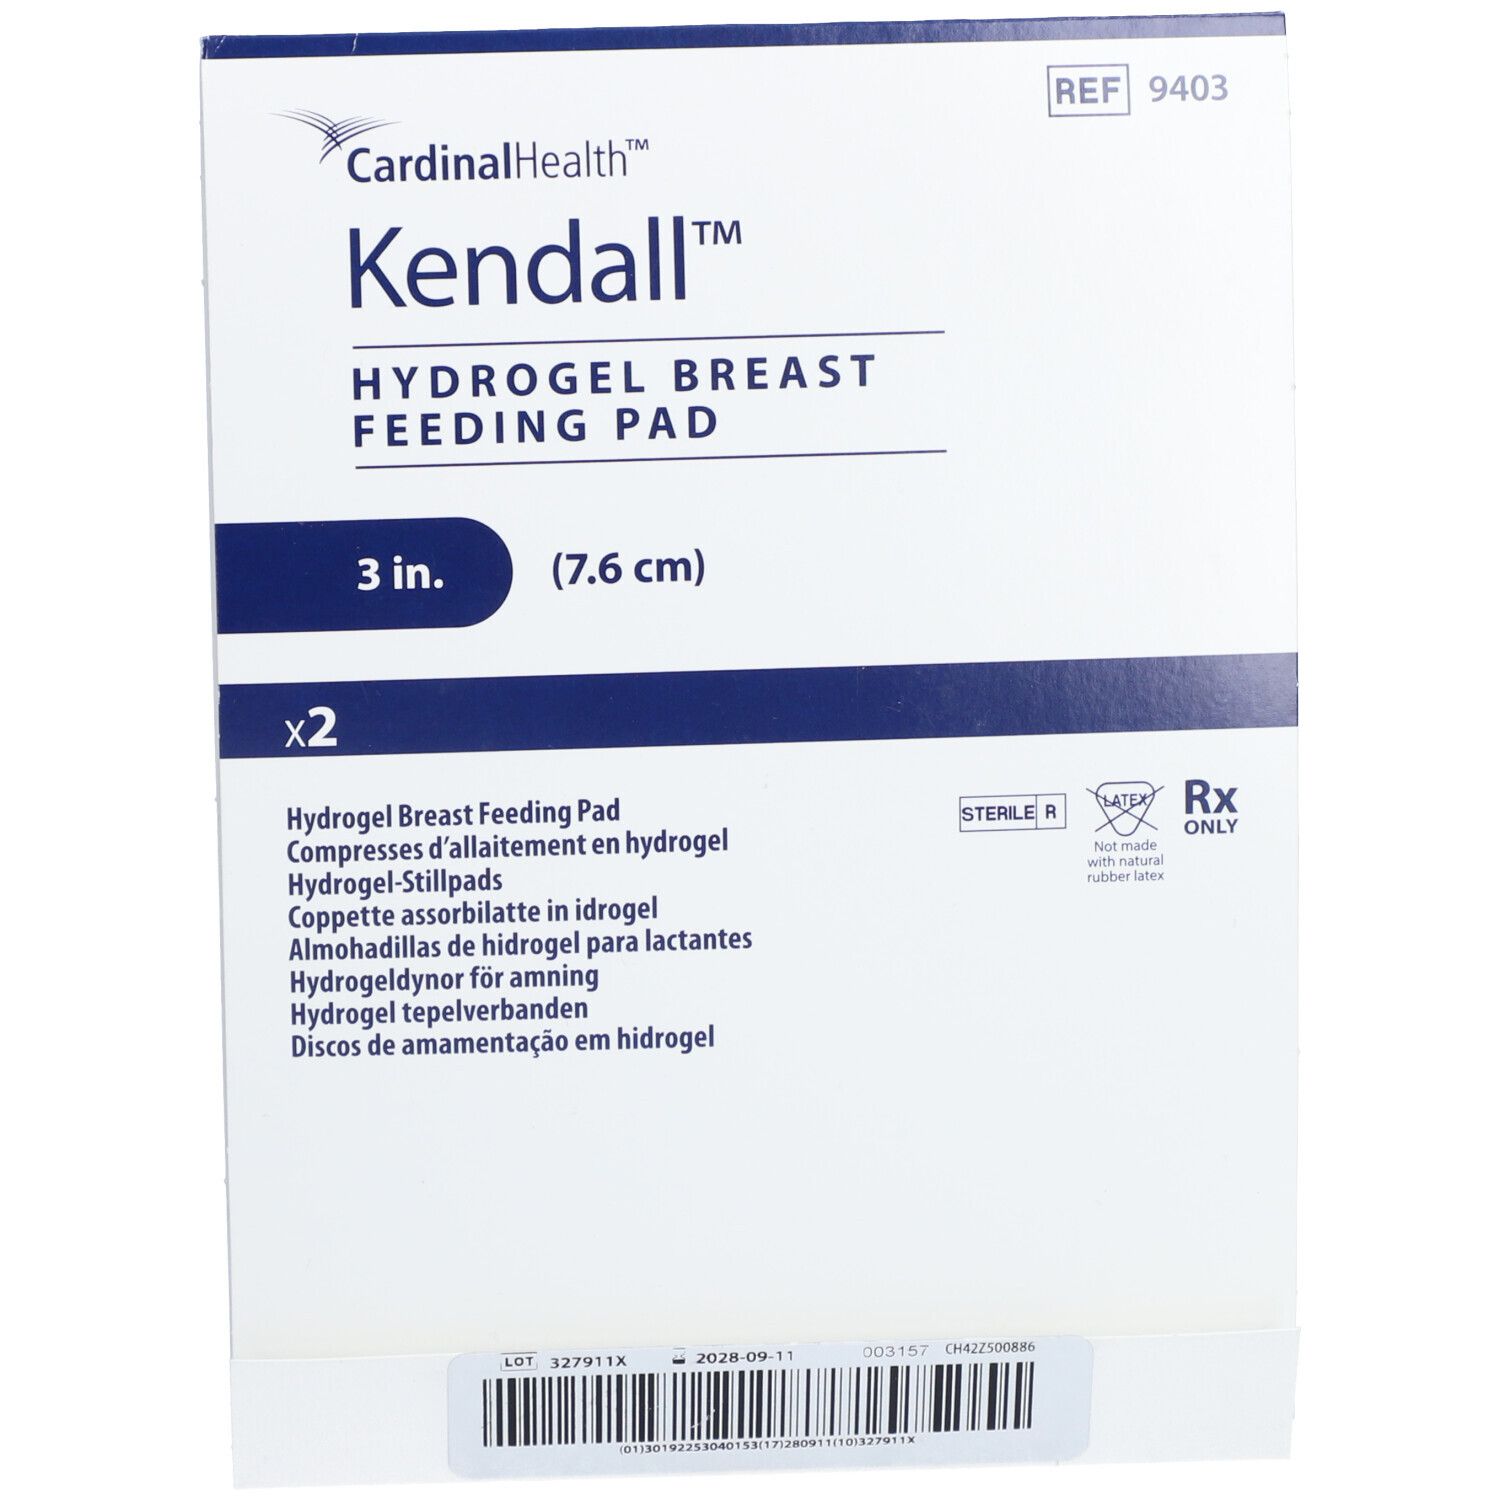 Kendall Hydrogel Breast Feeding Pad 5 x 2 pieces buy online